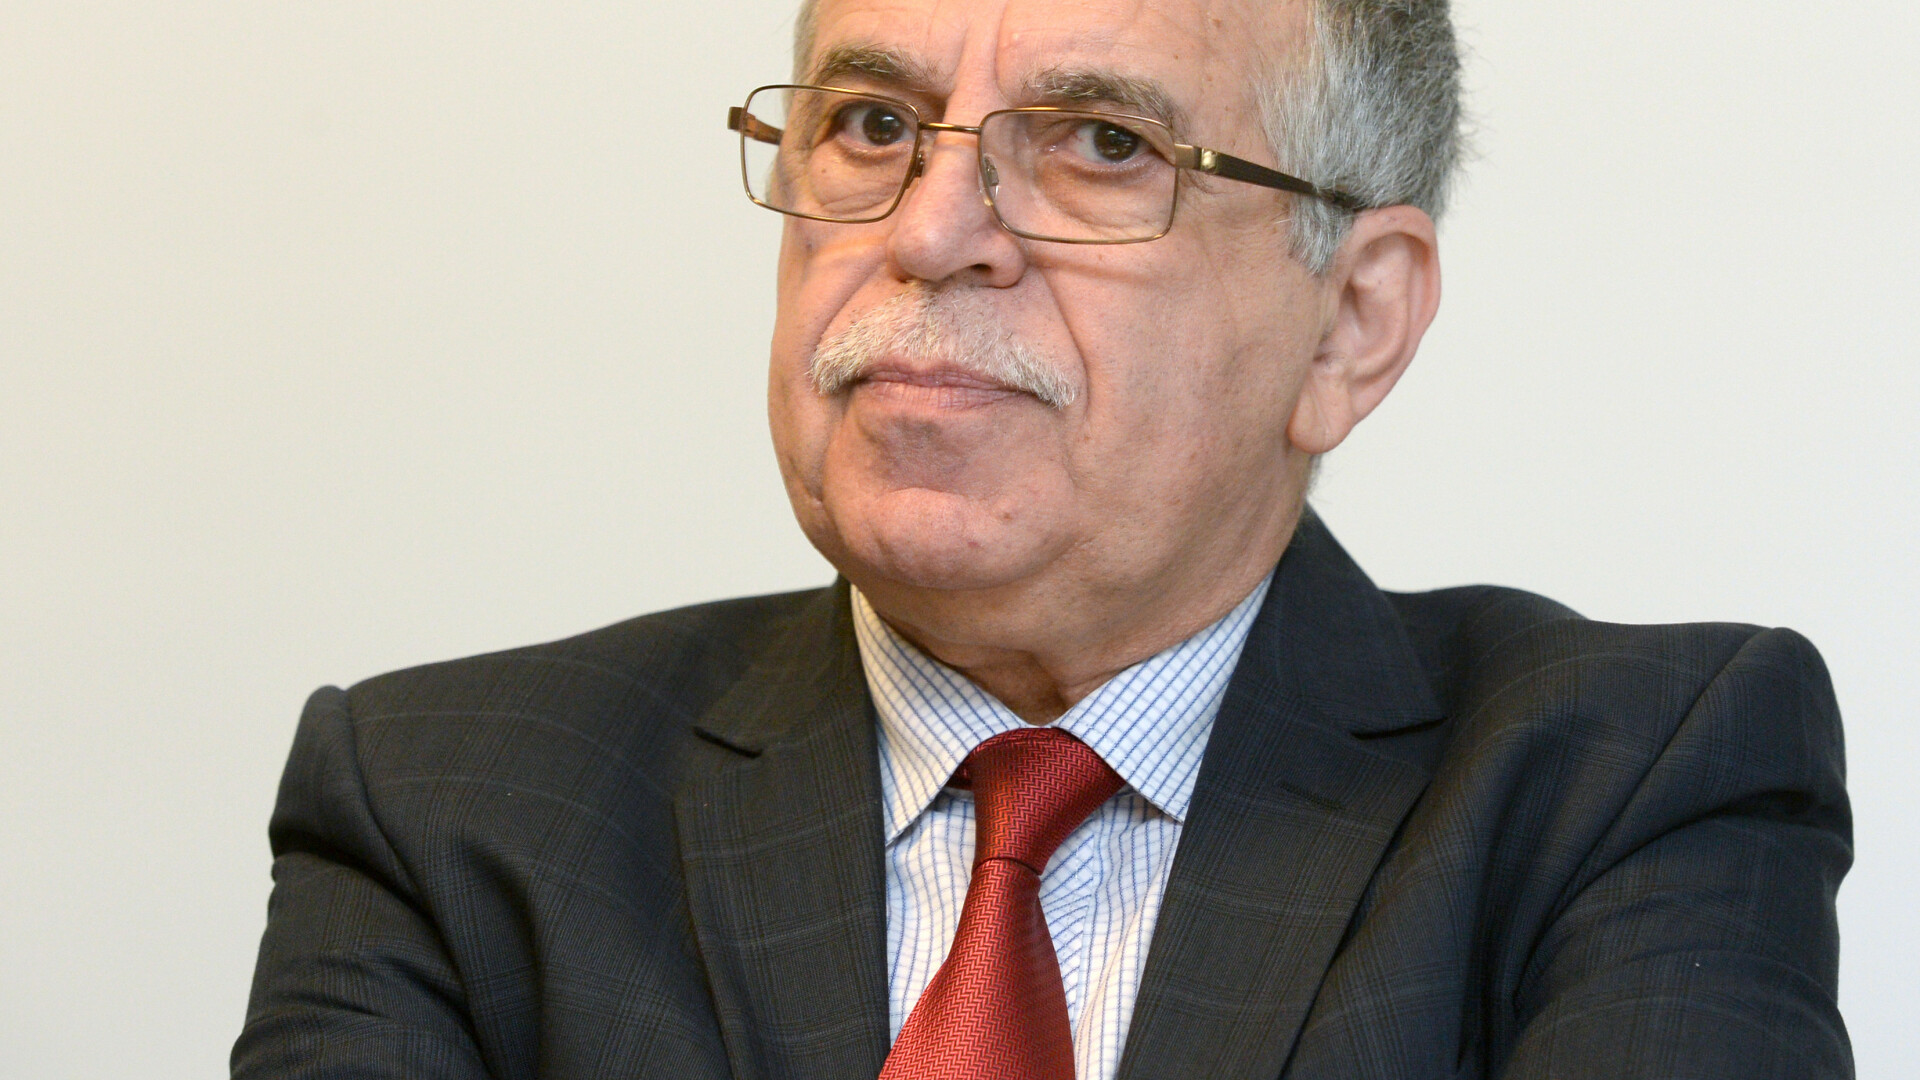 eurodeputatul PSD Victor Bostinaru